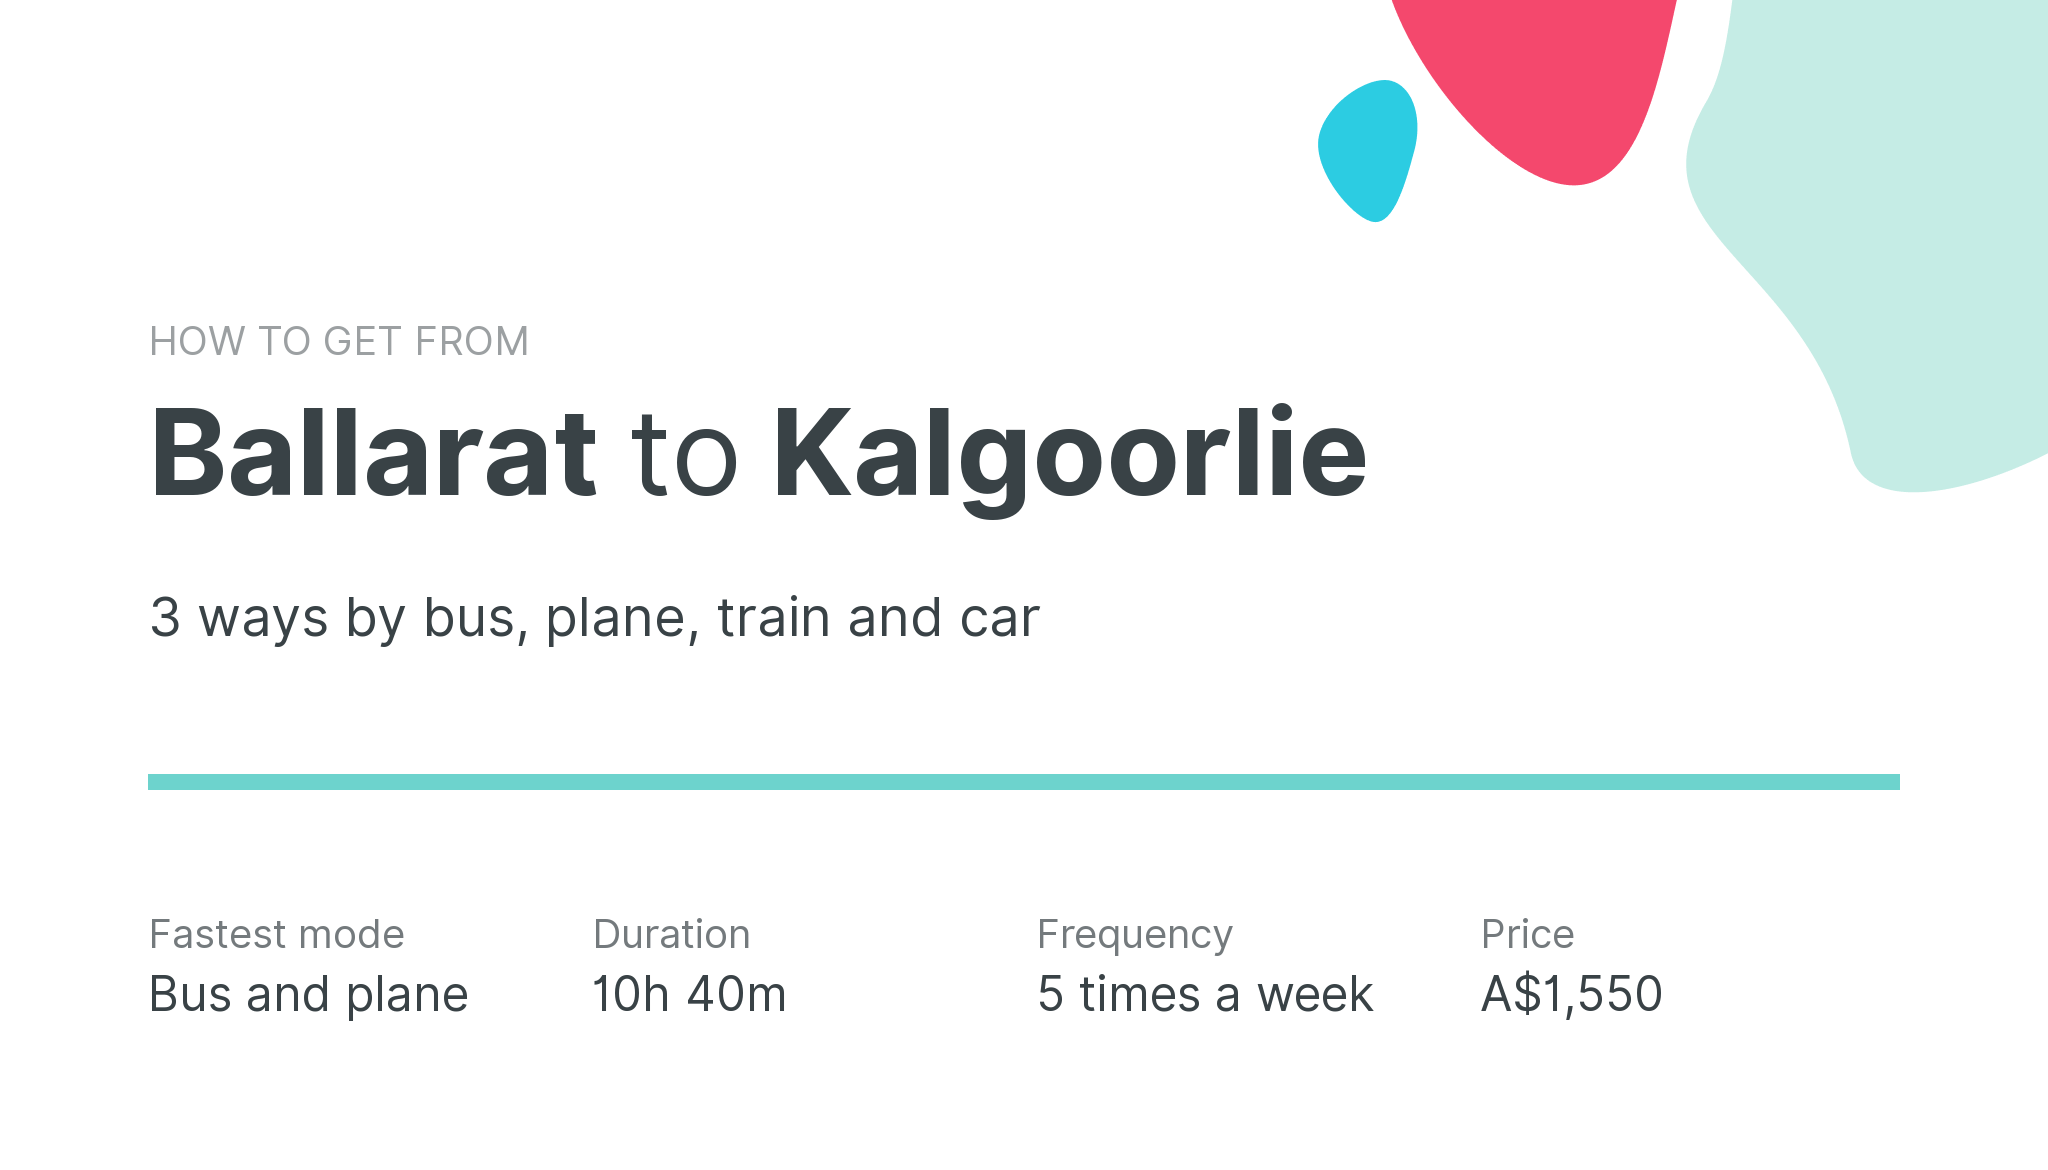 How do I get from Ballarat to Kalgoorlie